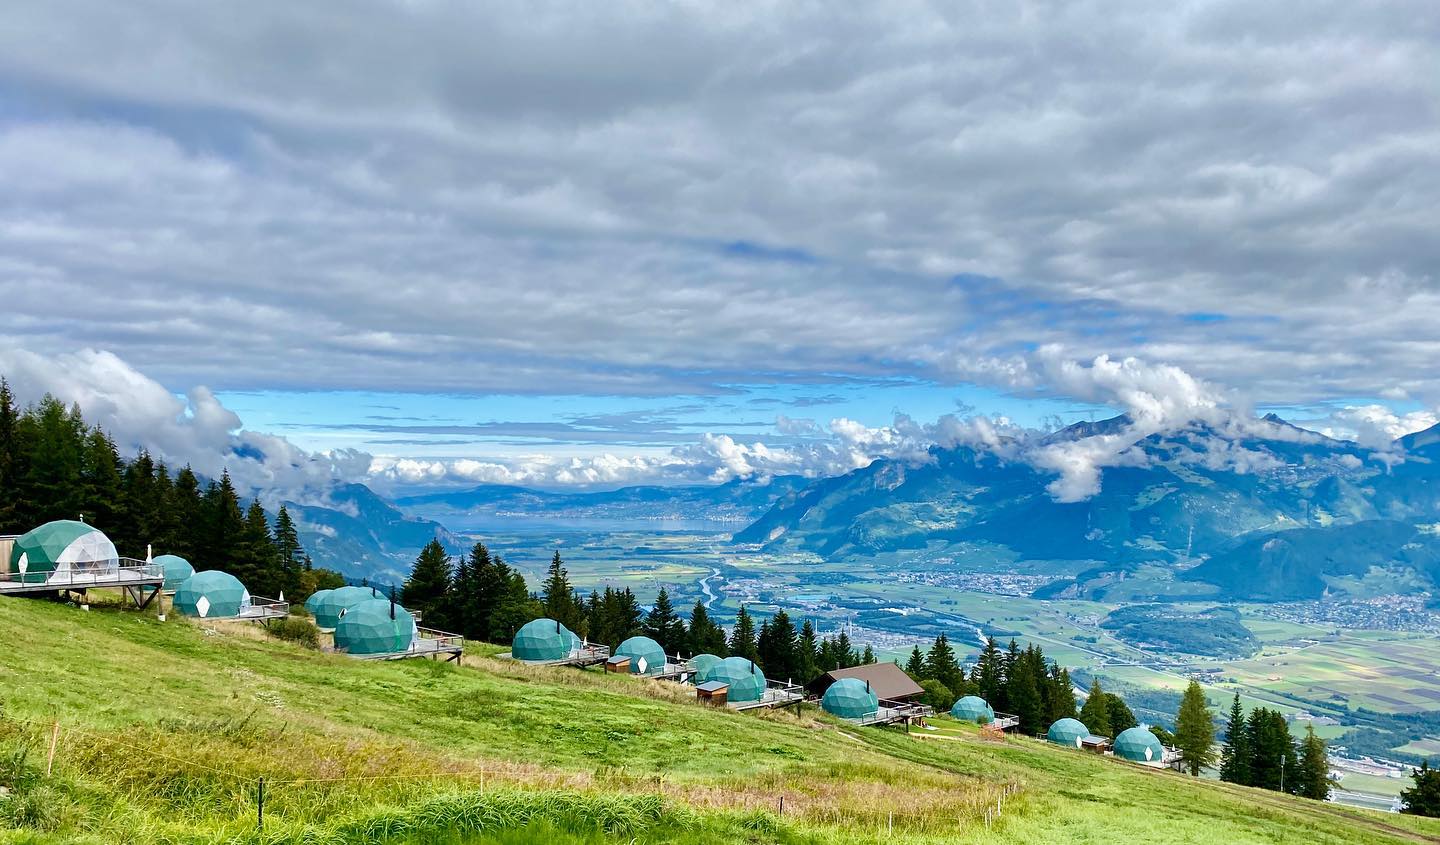 【#Travel】世界綠色酒店選：入住瑞士永續穹頂度假小屋Whitepod！眺望阿爾卑斯山的壯麗山雪絕景、享受與自然為伍的頂尖綠生活